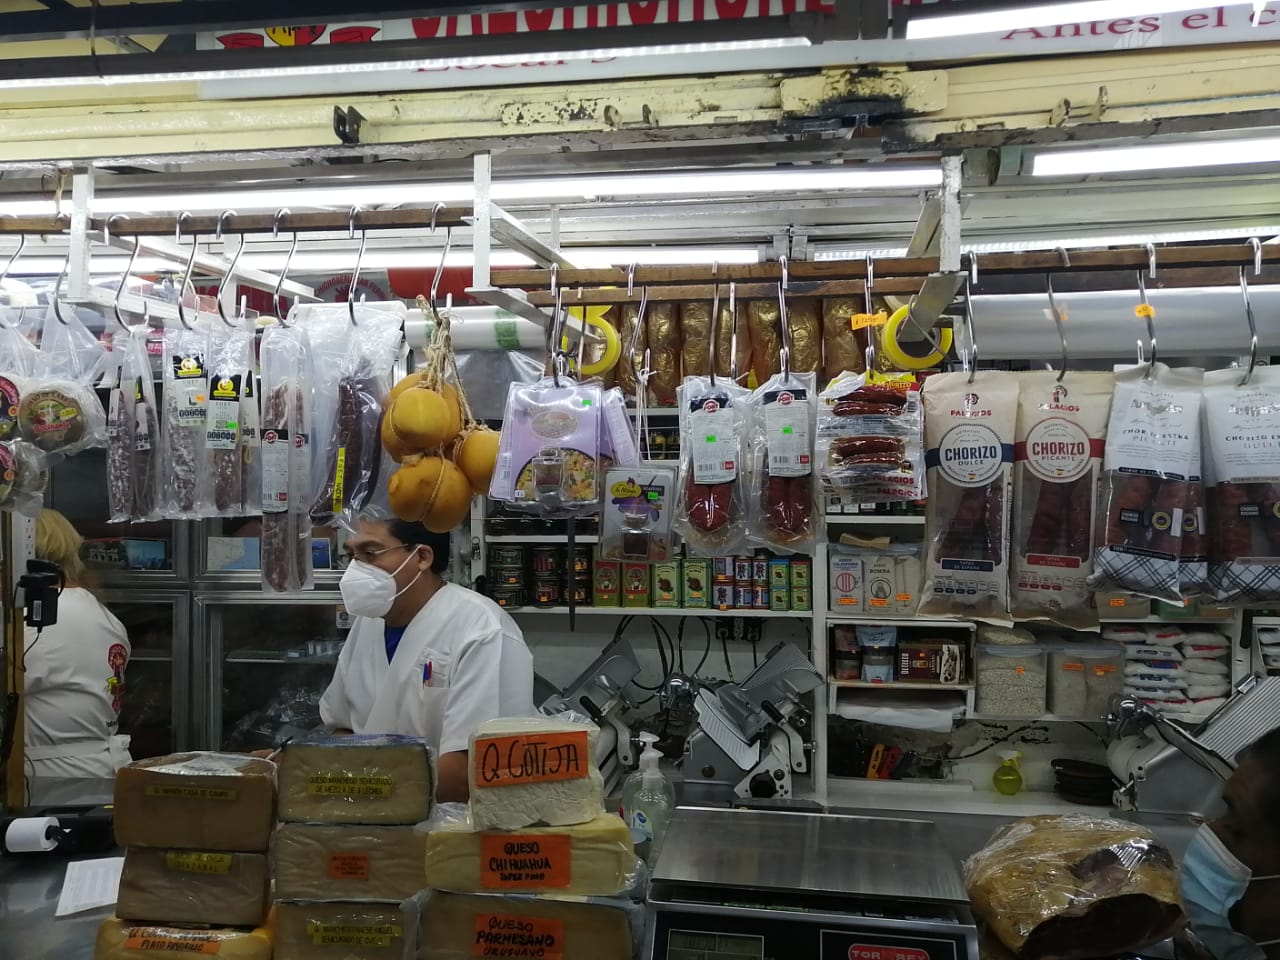  Mercado Pugibet - Salchichonería San Fermín